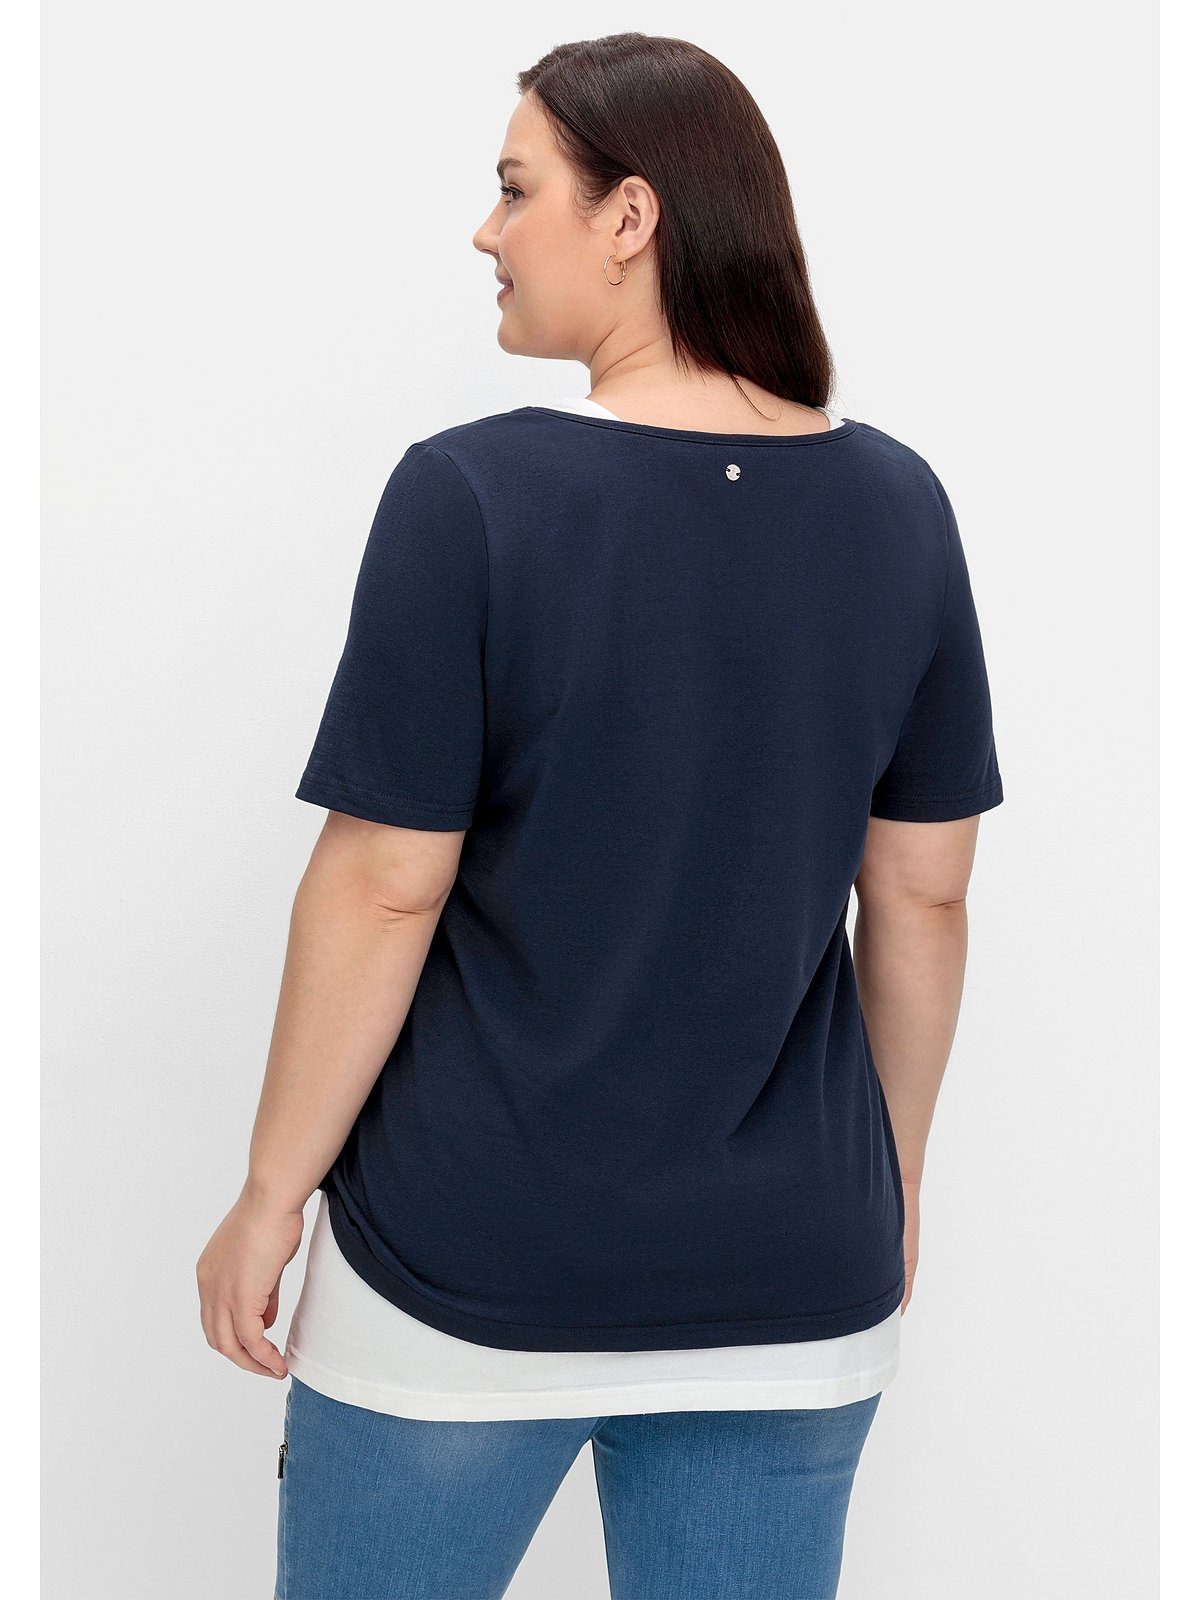 Sheego T-Shirt Große Größen mit Wordingprint und separatem Top | T-Shirts